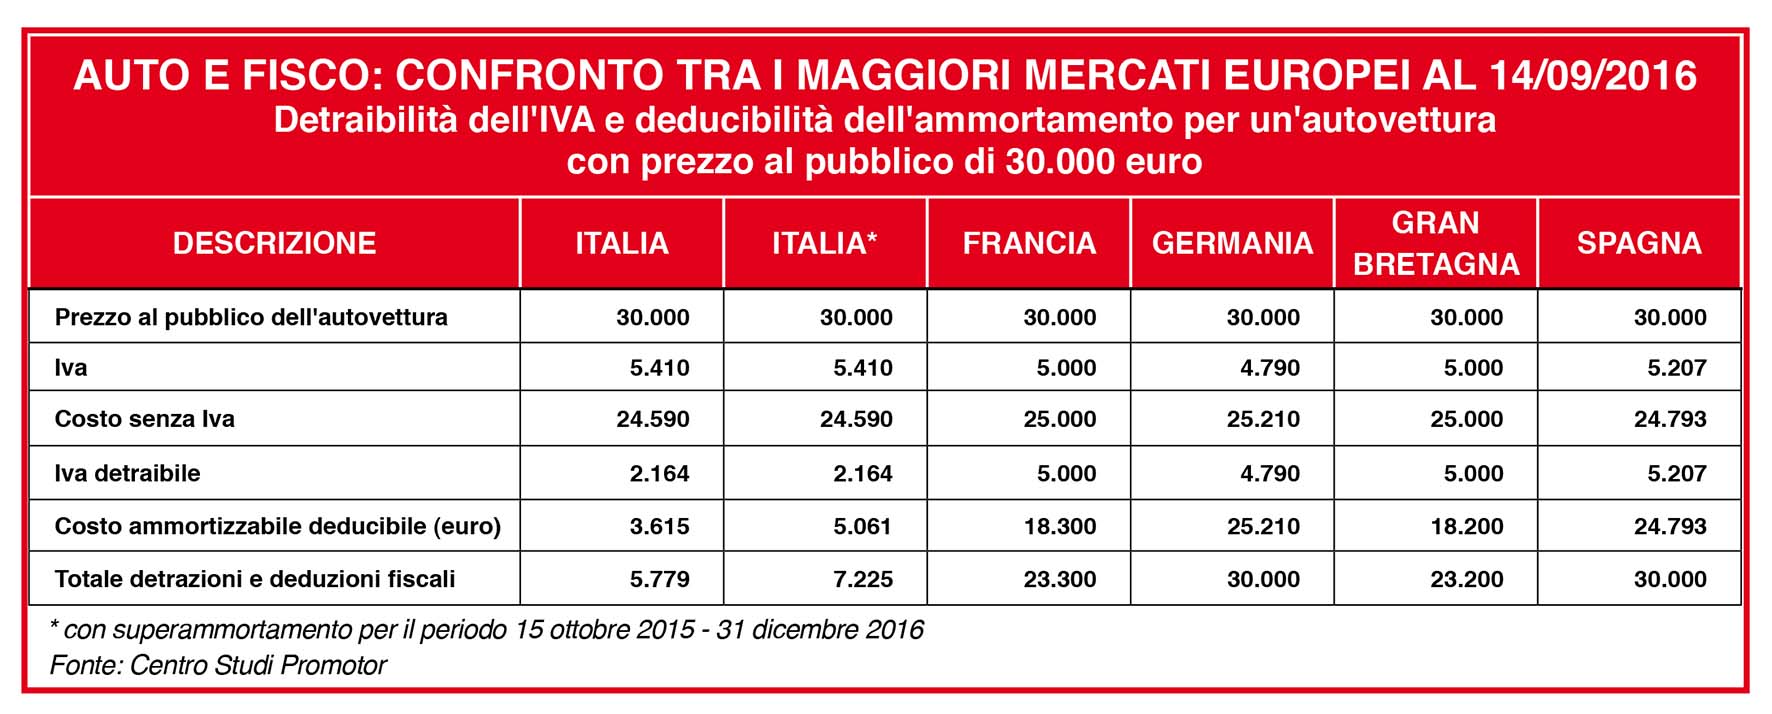 AAMn24 ottobre2016 comparazione peso fisco auto aziendale paesi UE italia penalizzata